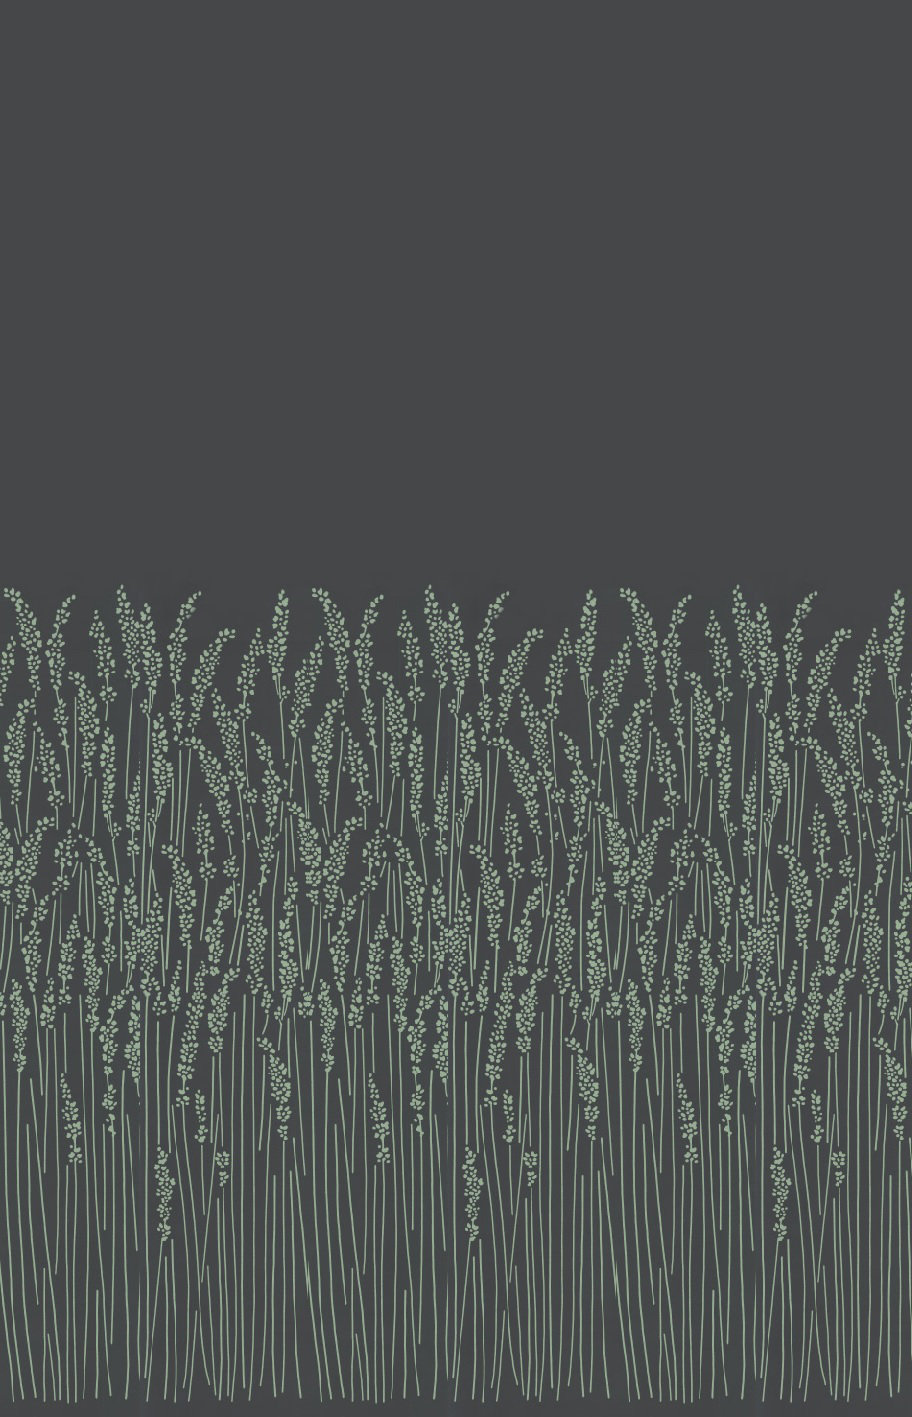 Farrow And Ball Wallpaper Grass - HD Wallpaper 